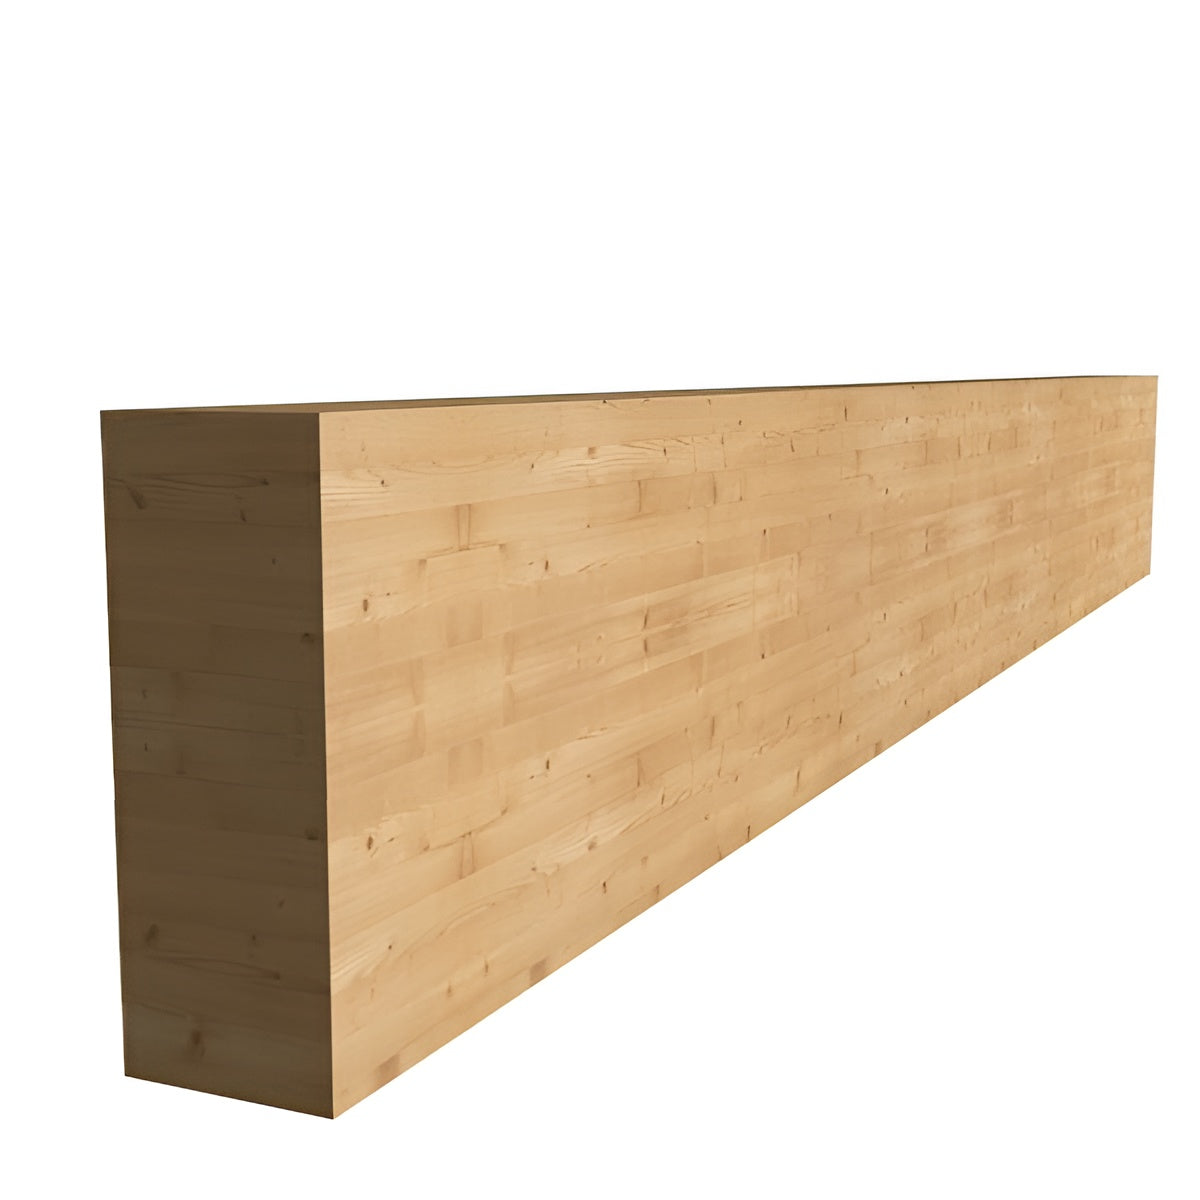 160 x 320 x 13500 mm Σύνθετη ξυλεία GL24